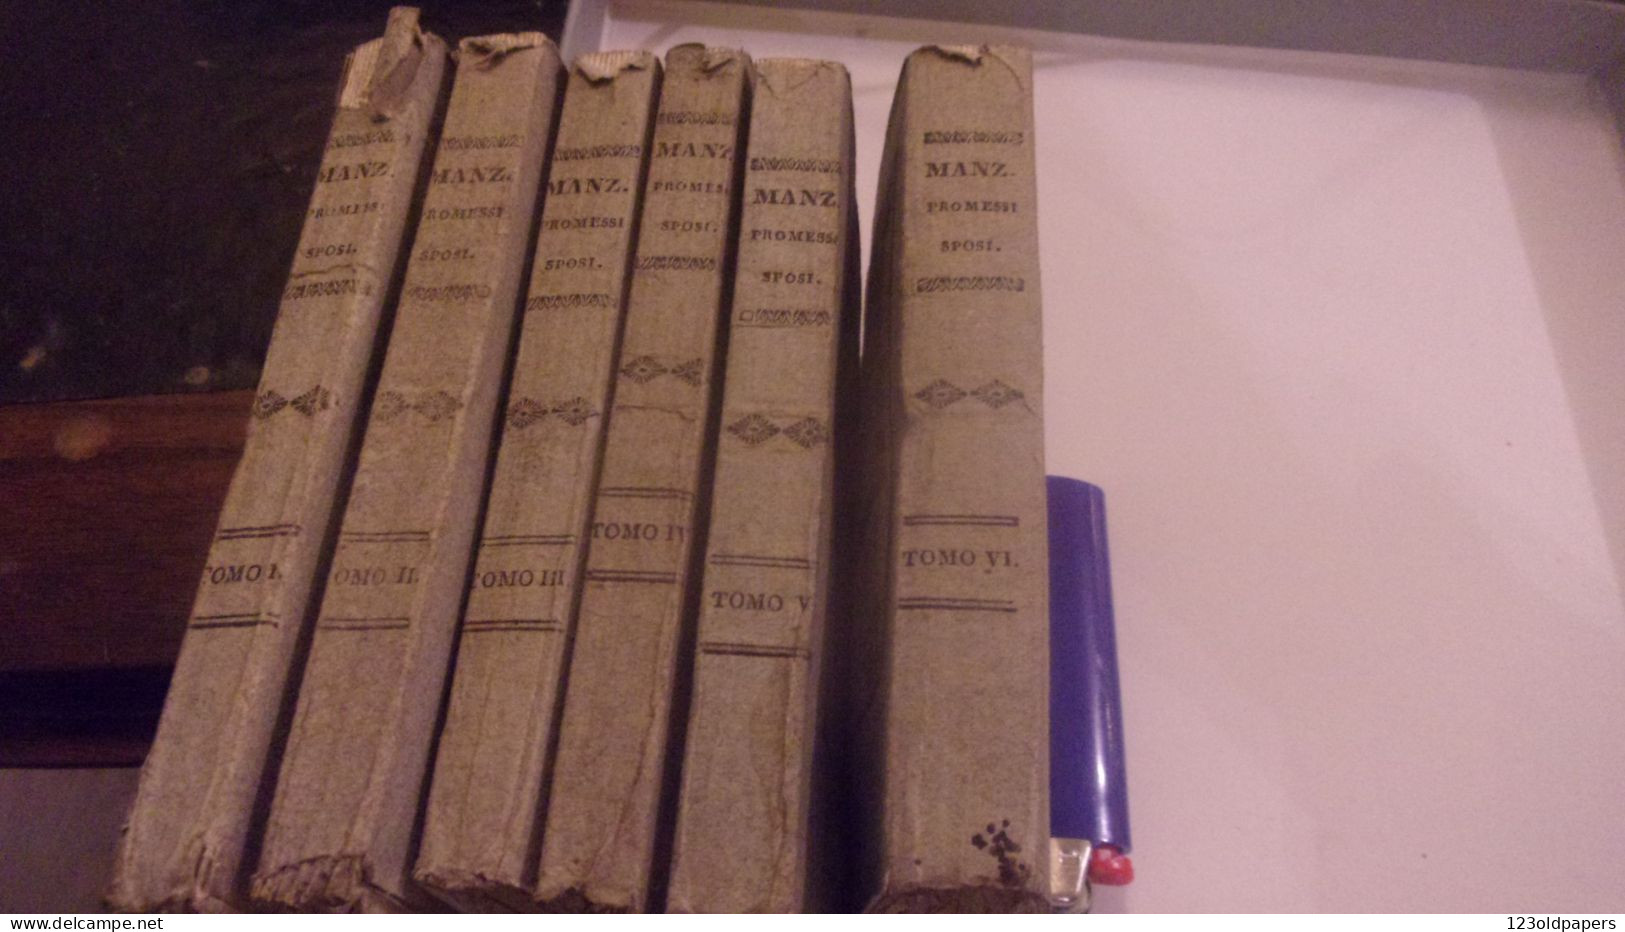 1836 6 VOL COMPLET I PROMESSI SPOSI DI ALES MANZONI  NAPOLI GABINETTO LETTERARIO - Livres Anciens